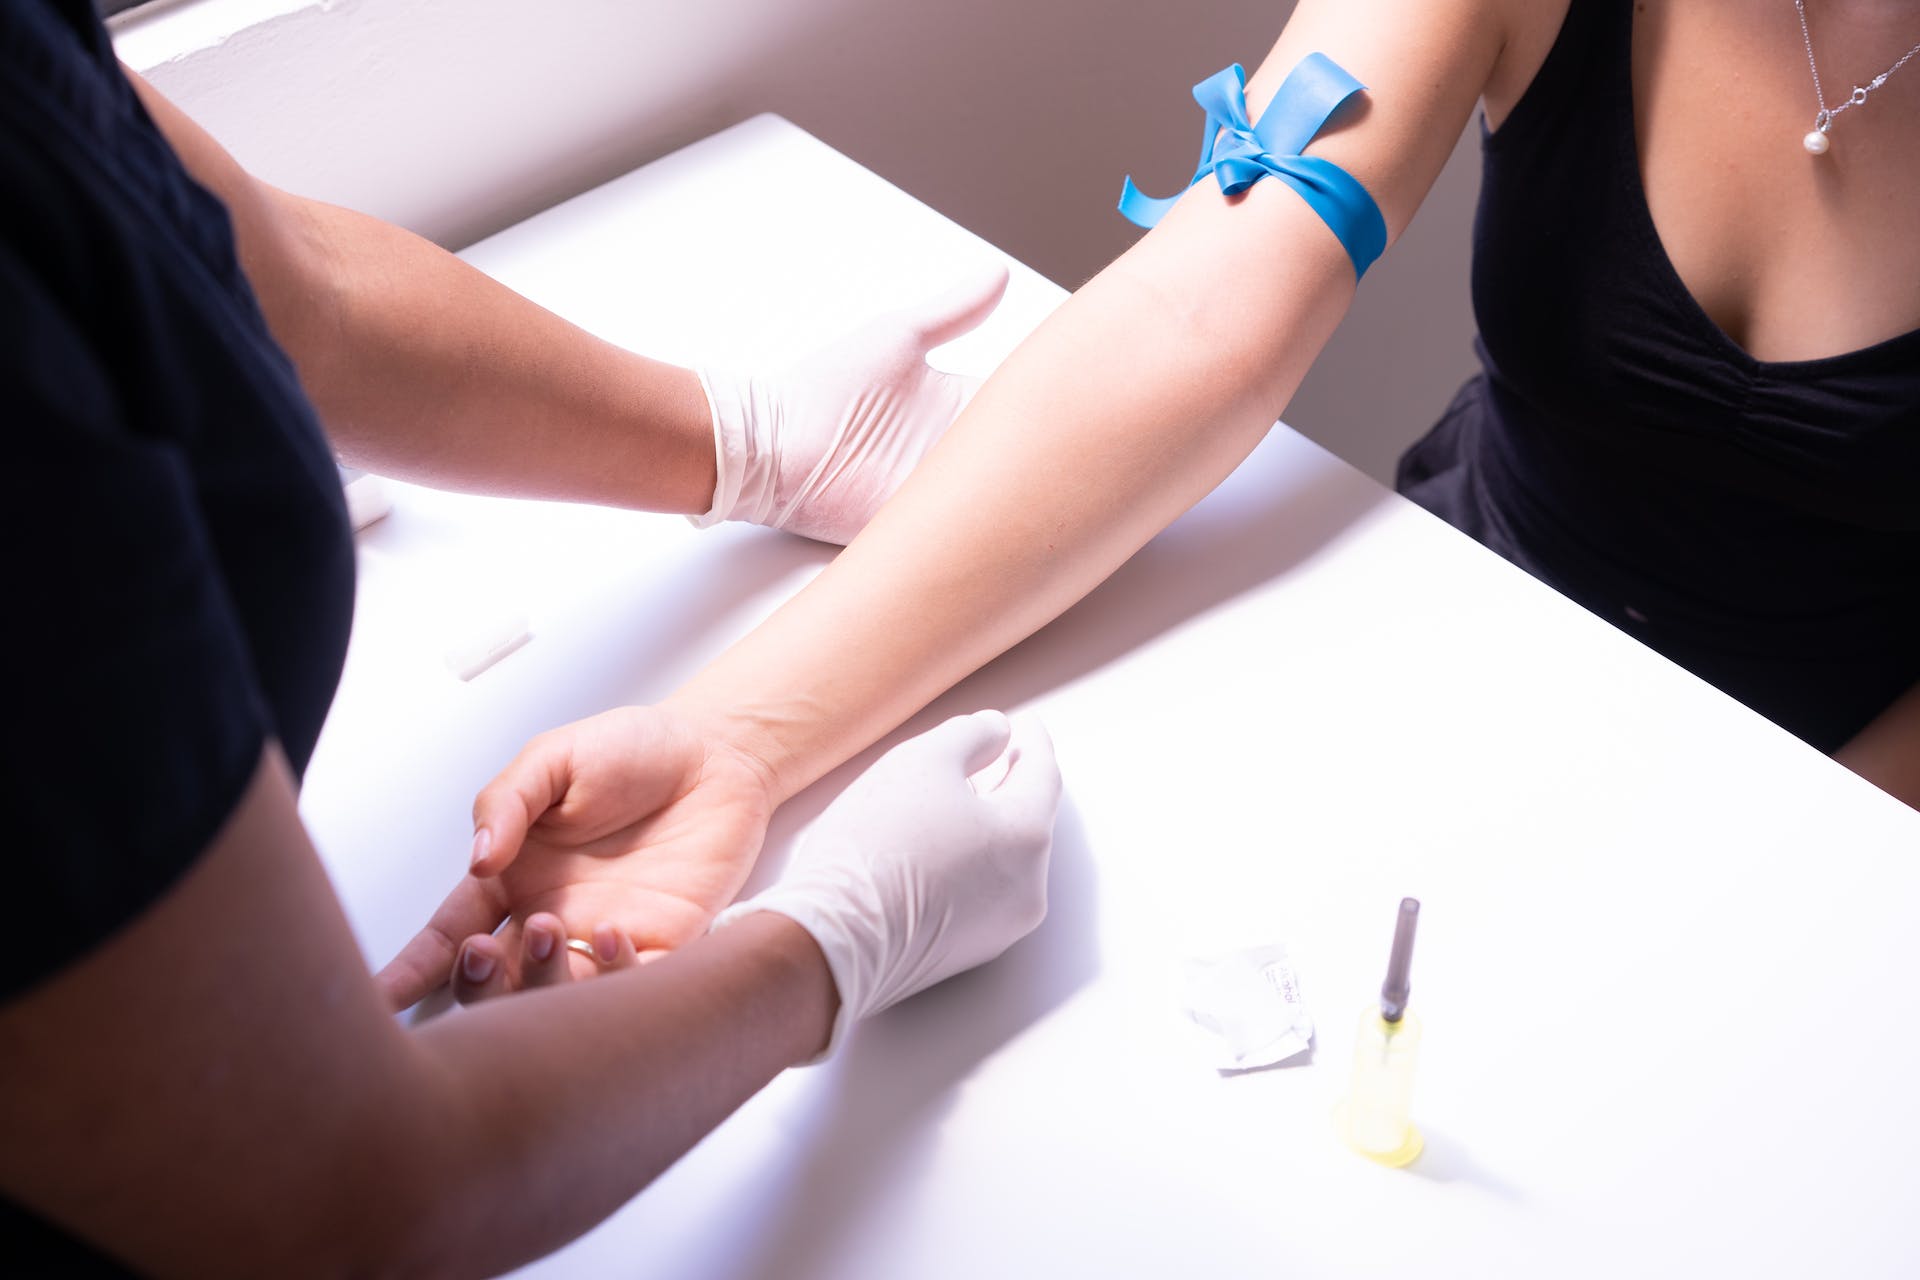 Un profesional médico preparando a una mujer para un análisis de sangre | Fuente: Pexels